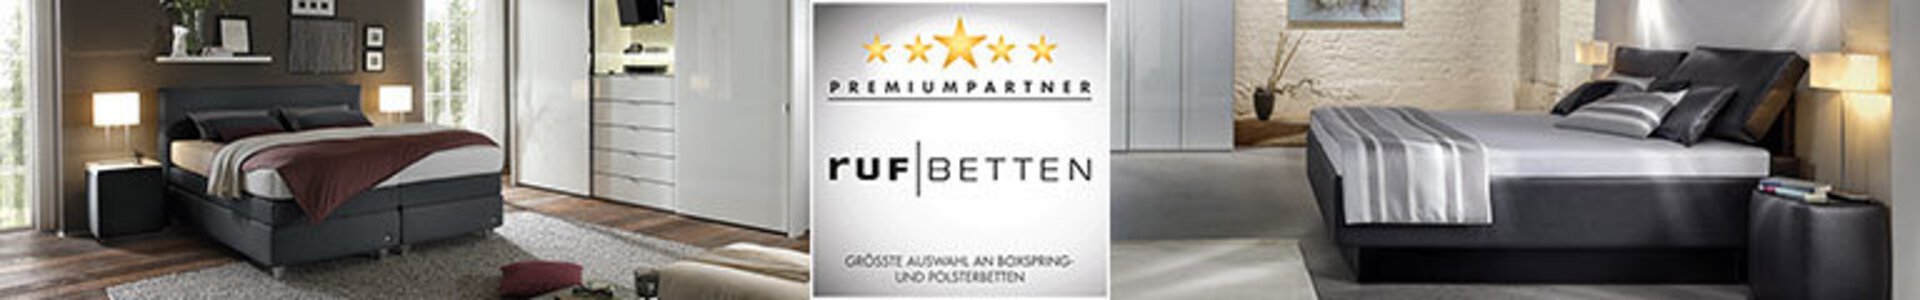 Bannerbild der Premiumpartner-Marke ruf Betten